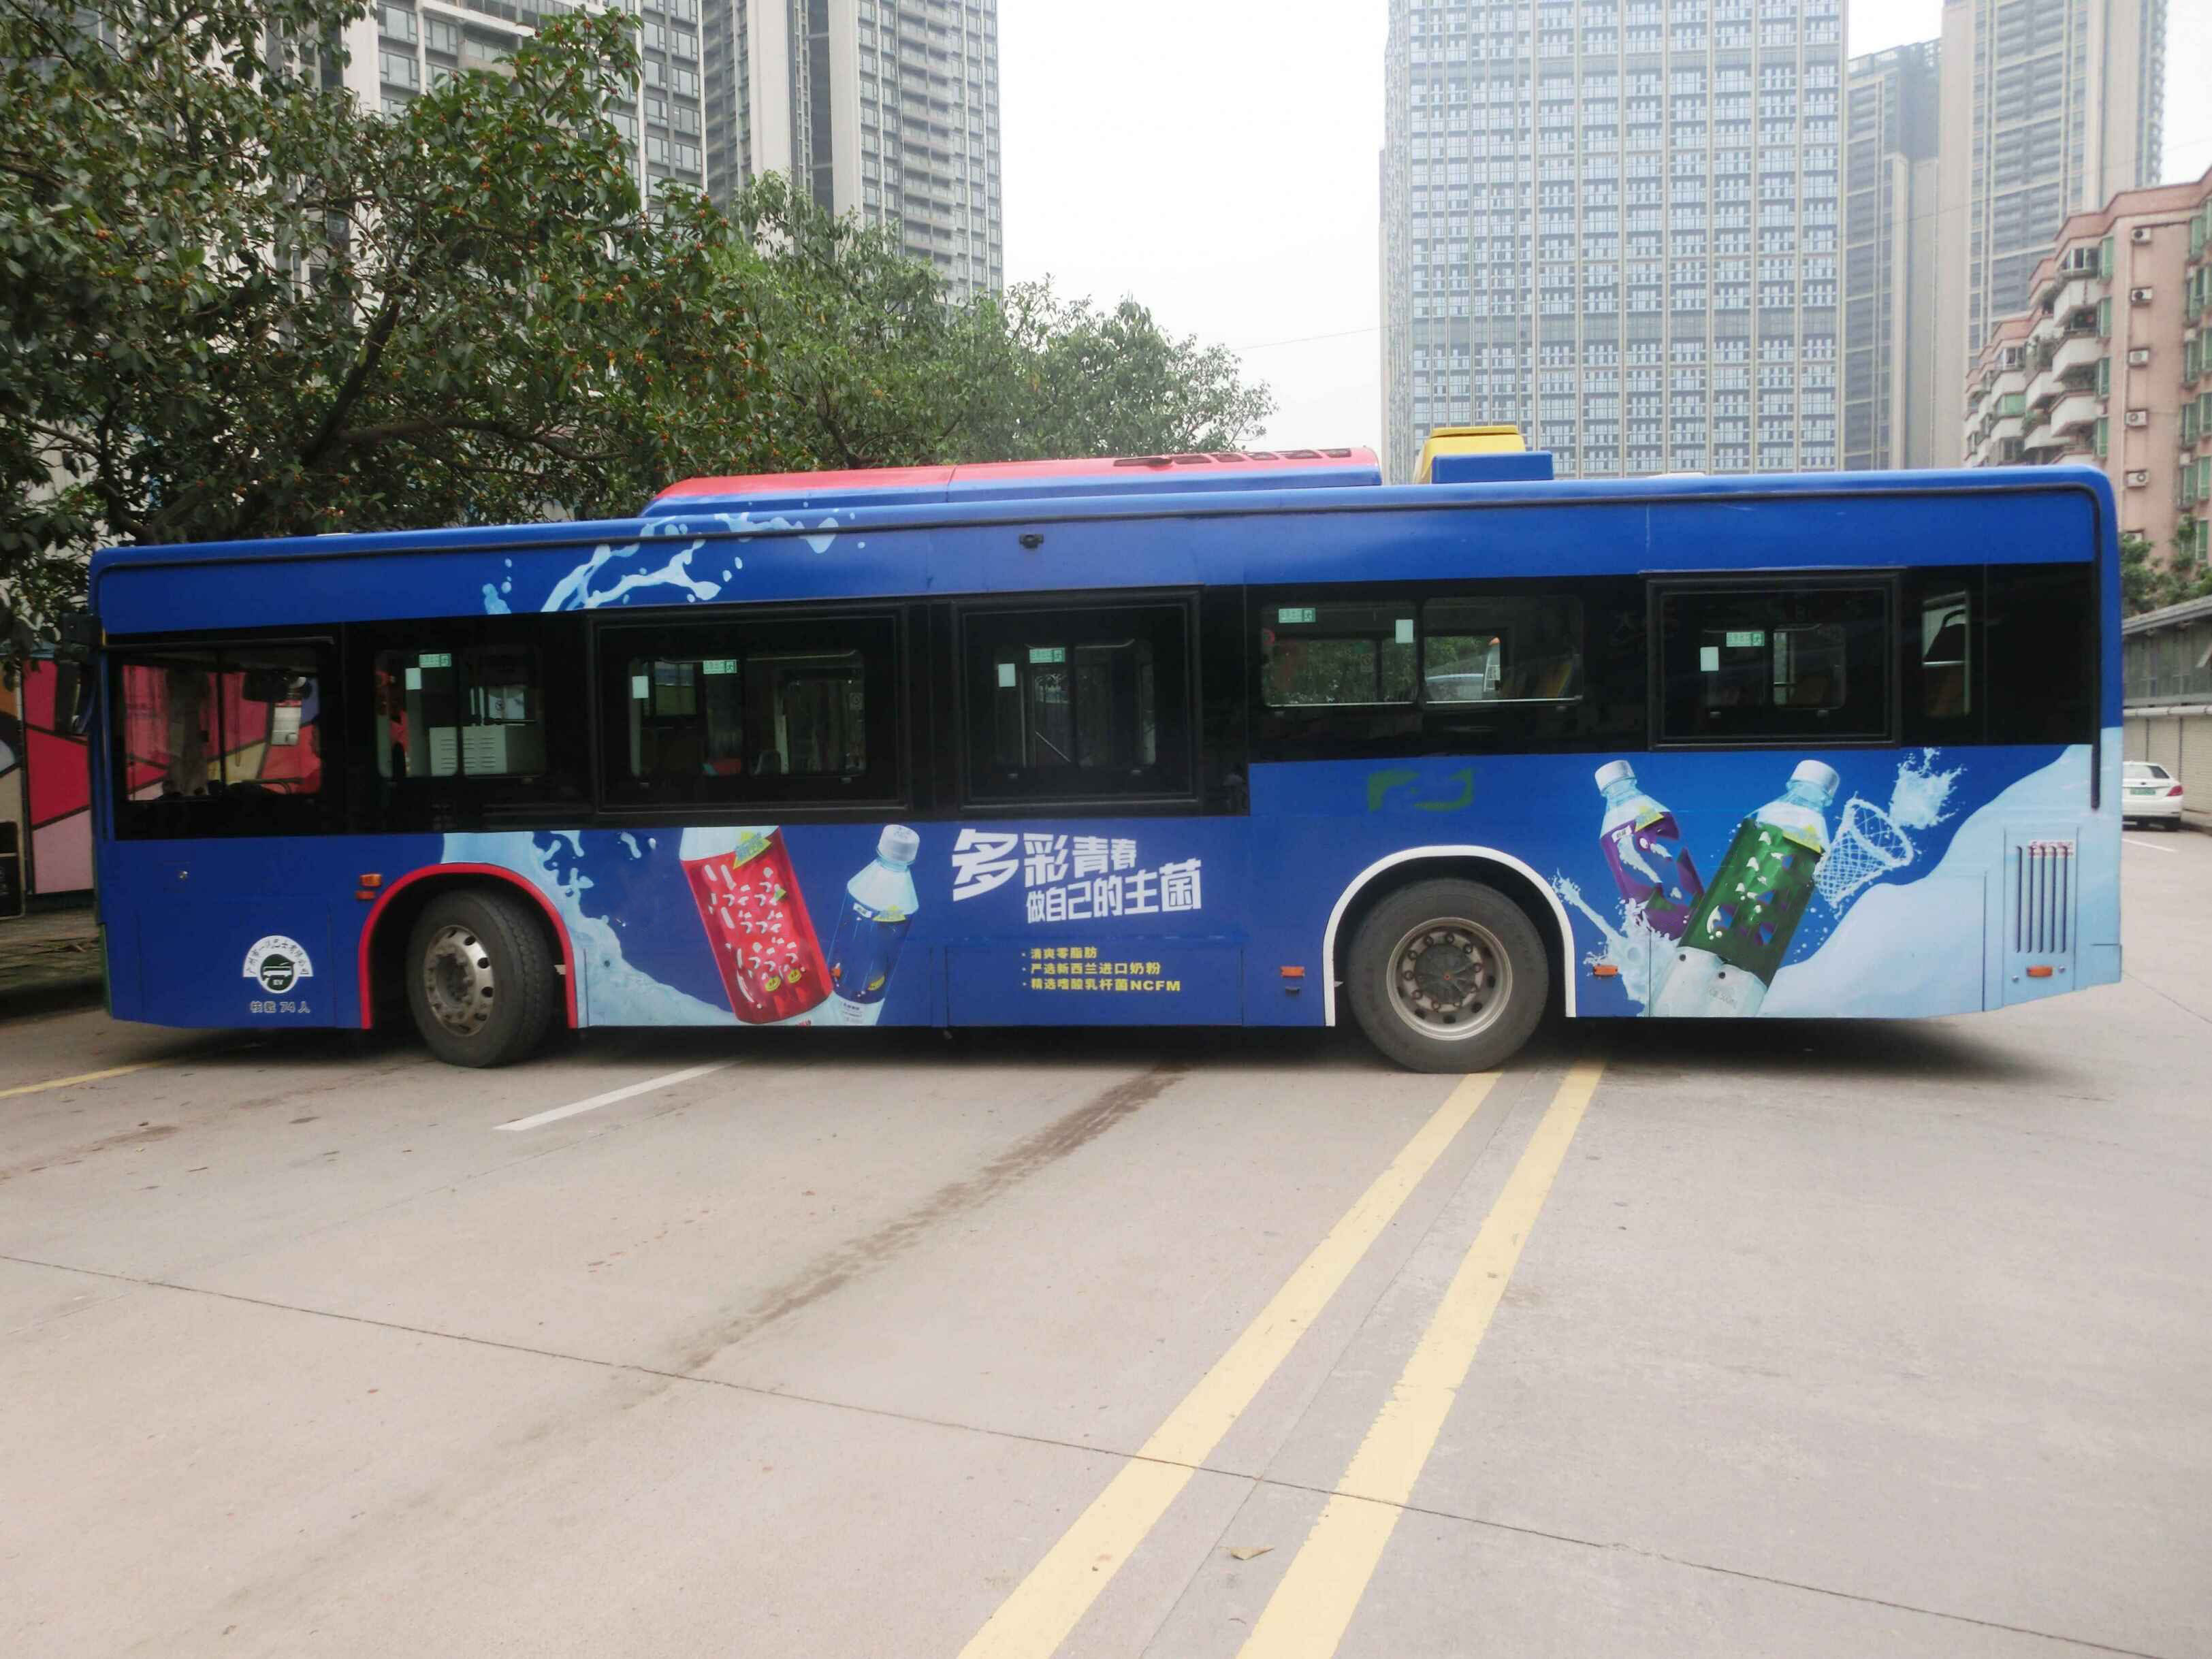 广州市一汽巴士有限公司2019-2022年车身 广告资源项目    报名竞买